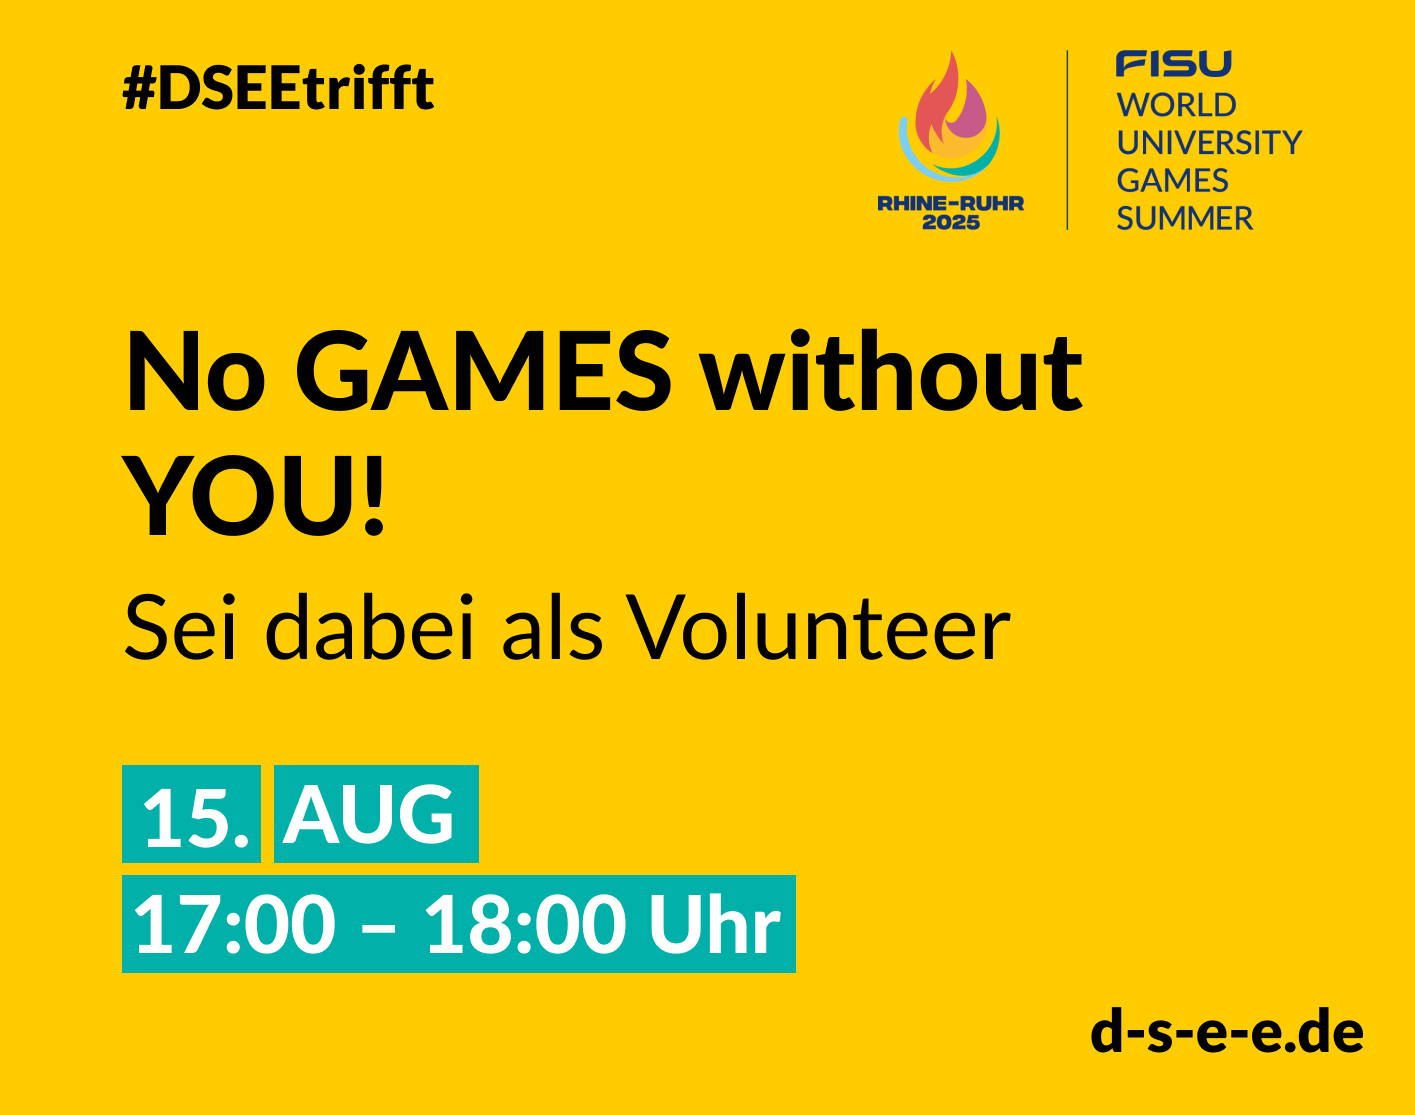 Gelbe Grafik mit dem Logo der Rhine-Ruhr 2025 FISU World University Games Summer; Text: #DSEEtrifft No Games without you! Sei dabei als Volunteer. 15. August 17:00–18:00 Uhr; d-s-e-e.de